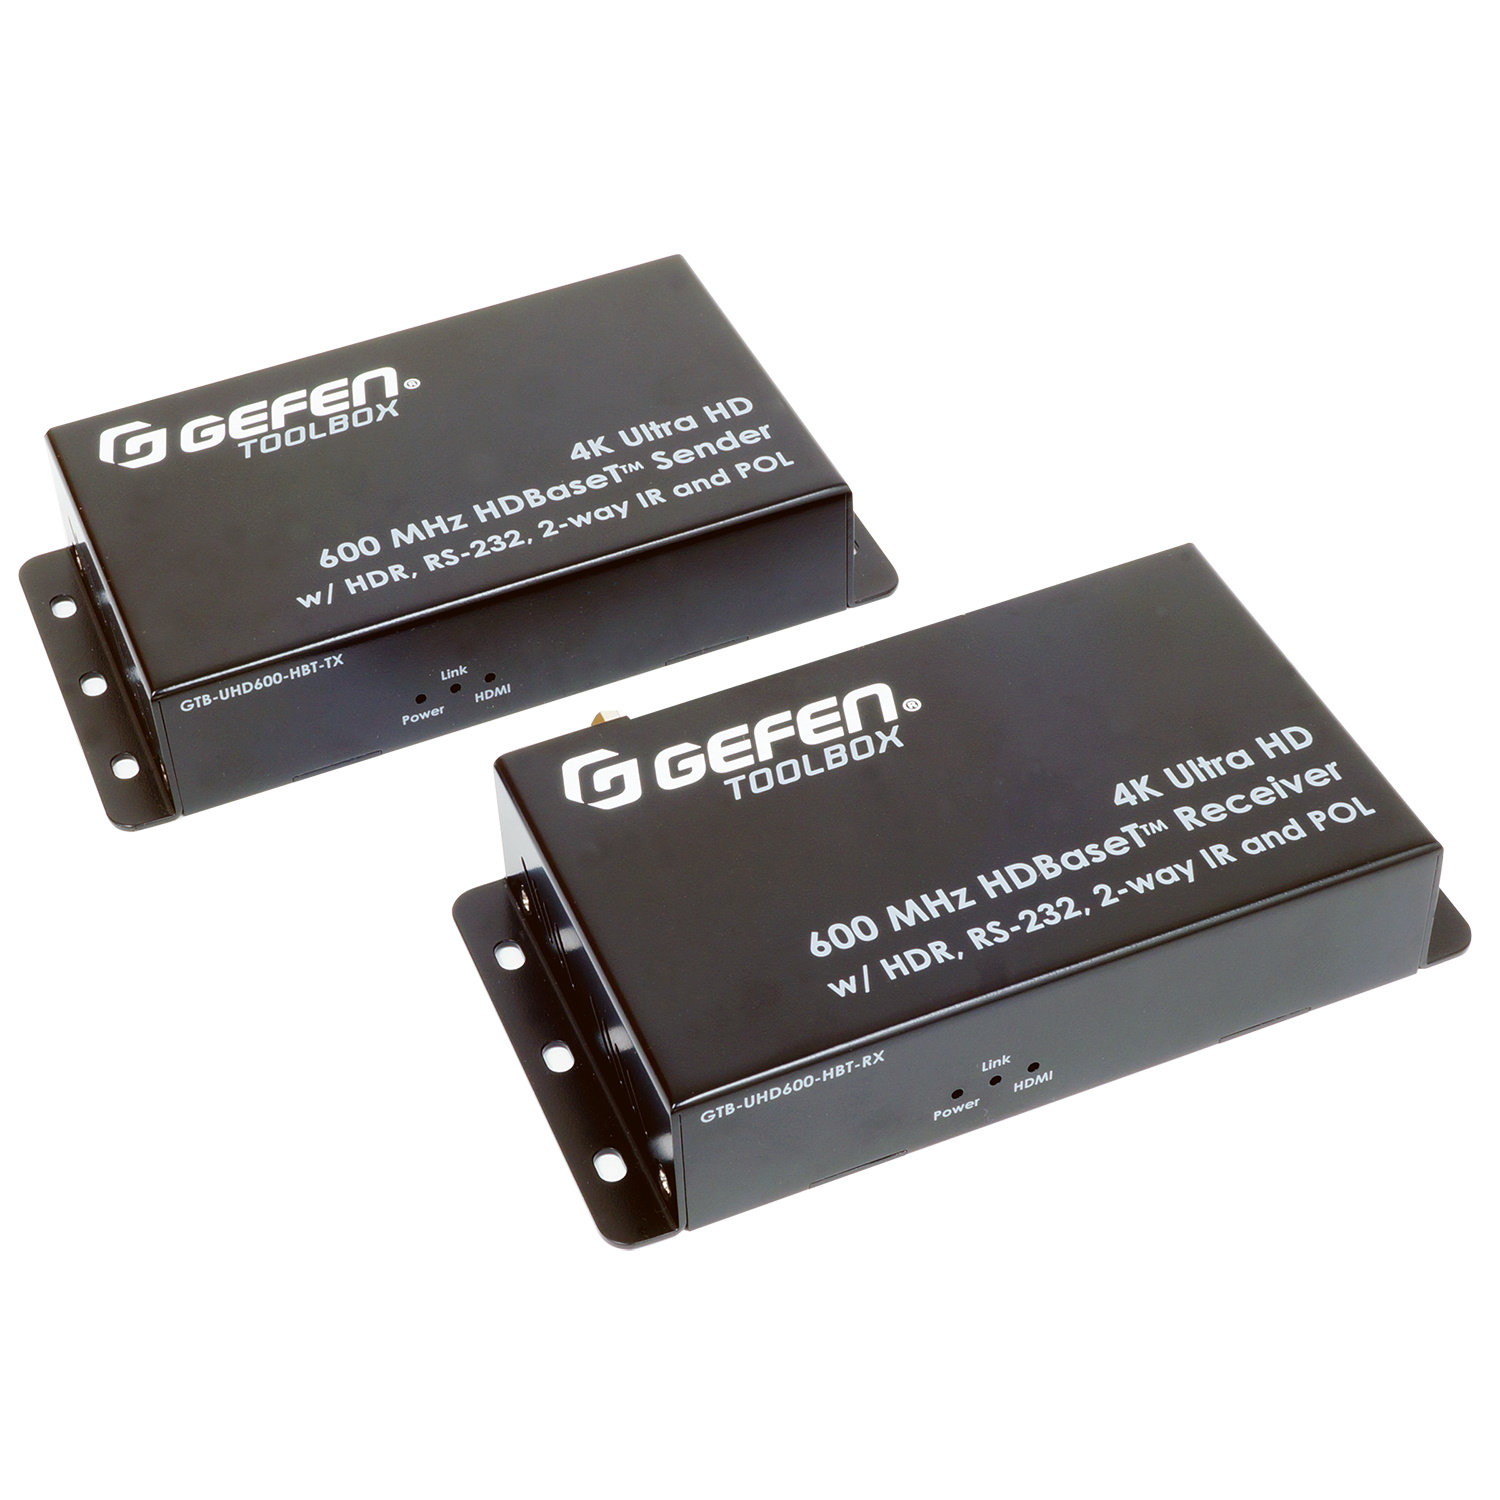 HDMI коммутаторы, разветвители, повторители Gefen GTB-UHD600-HBT hdmi коммутаторы разветвители повторители gefen ext uhd600 41